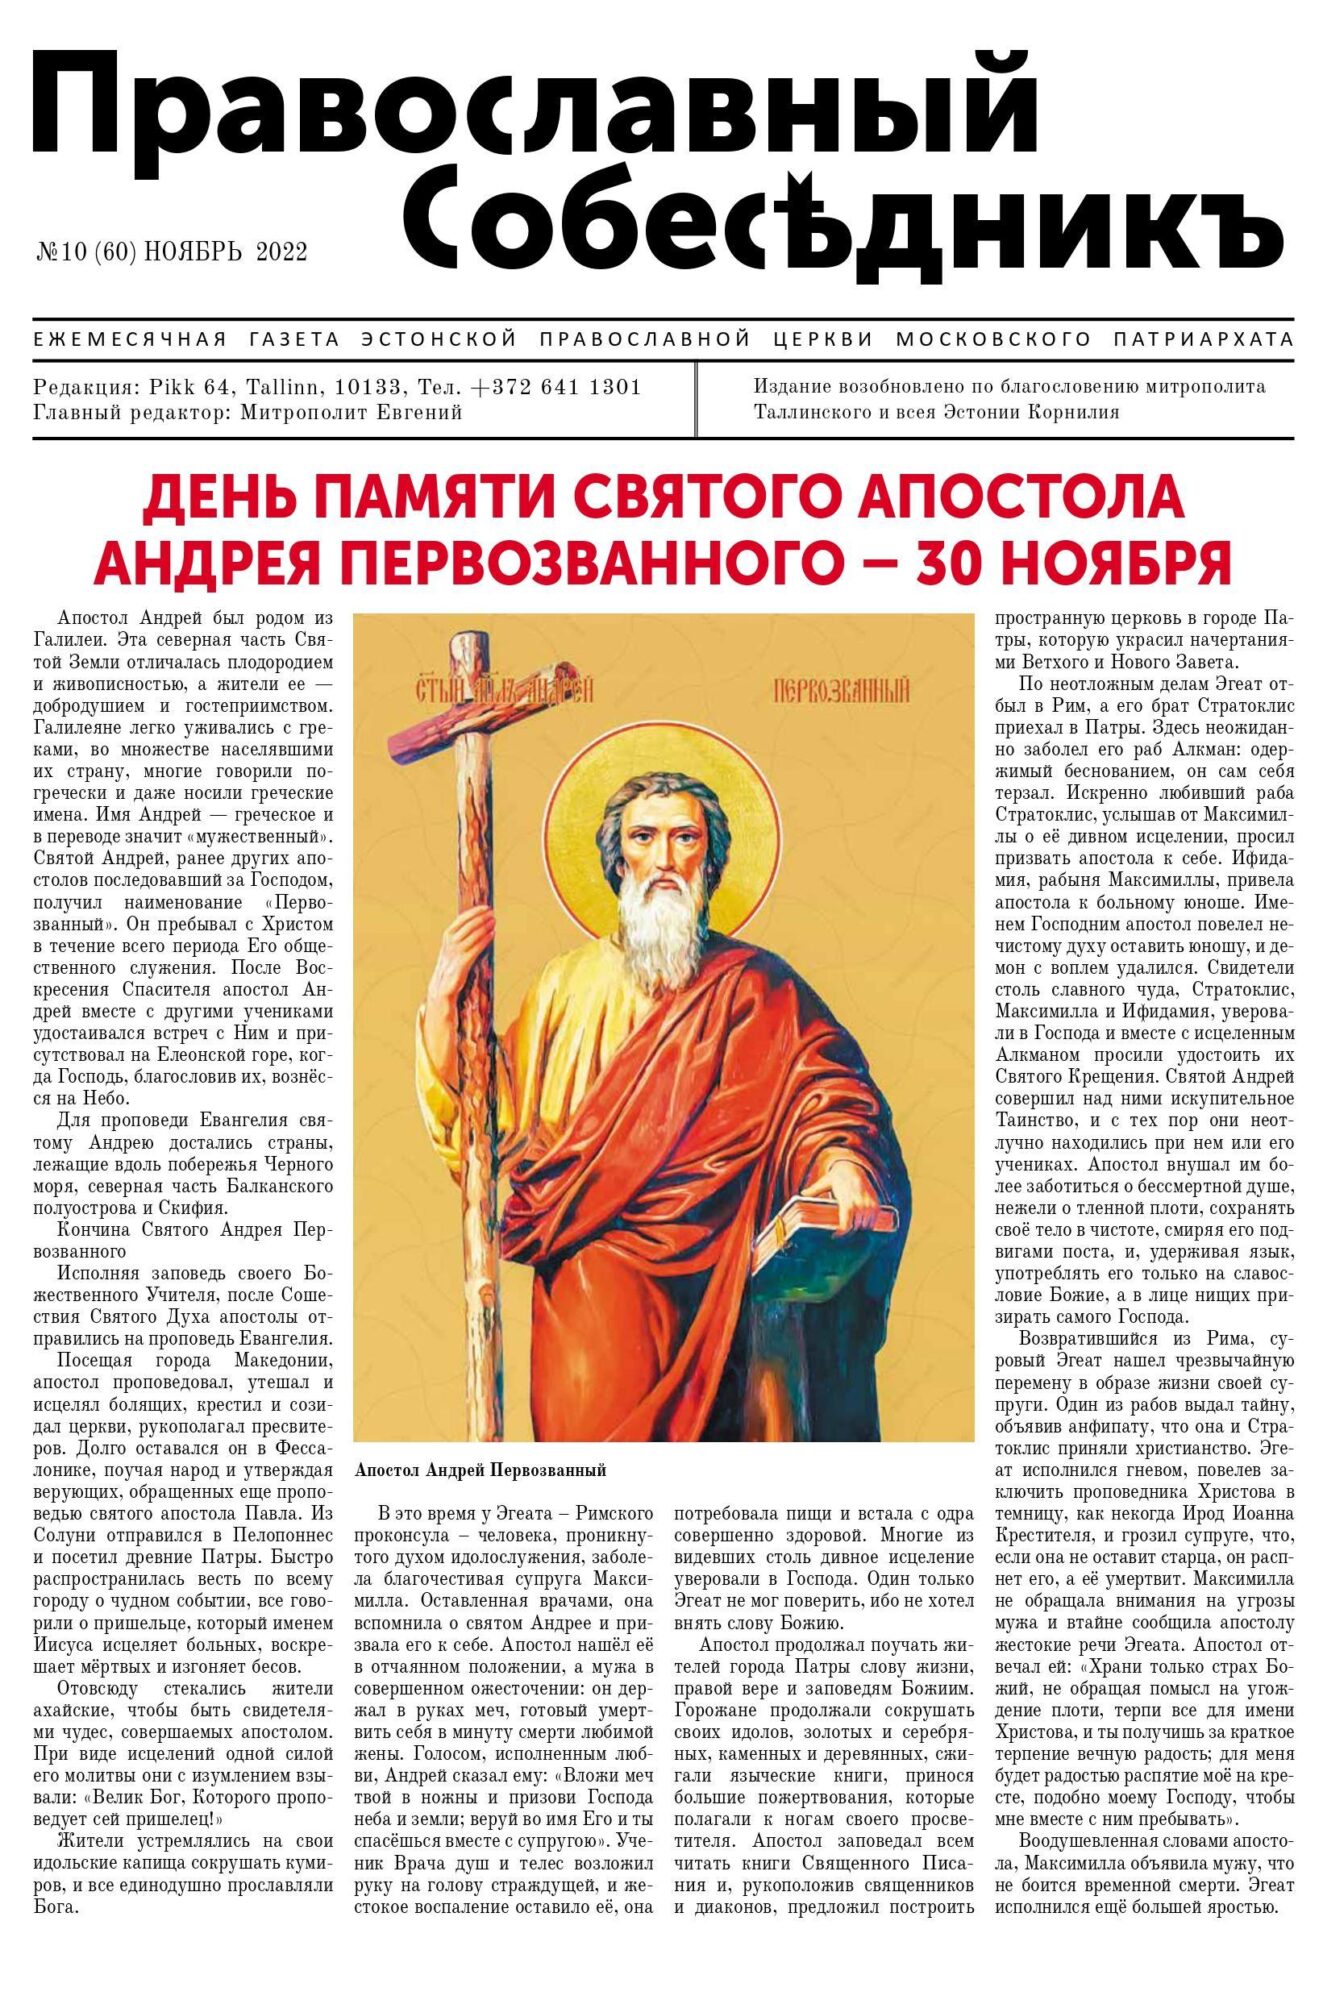 Православный Собеседник, ноябрь 2022. Обложка